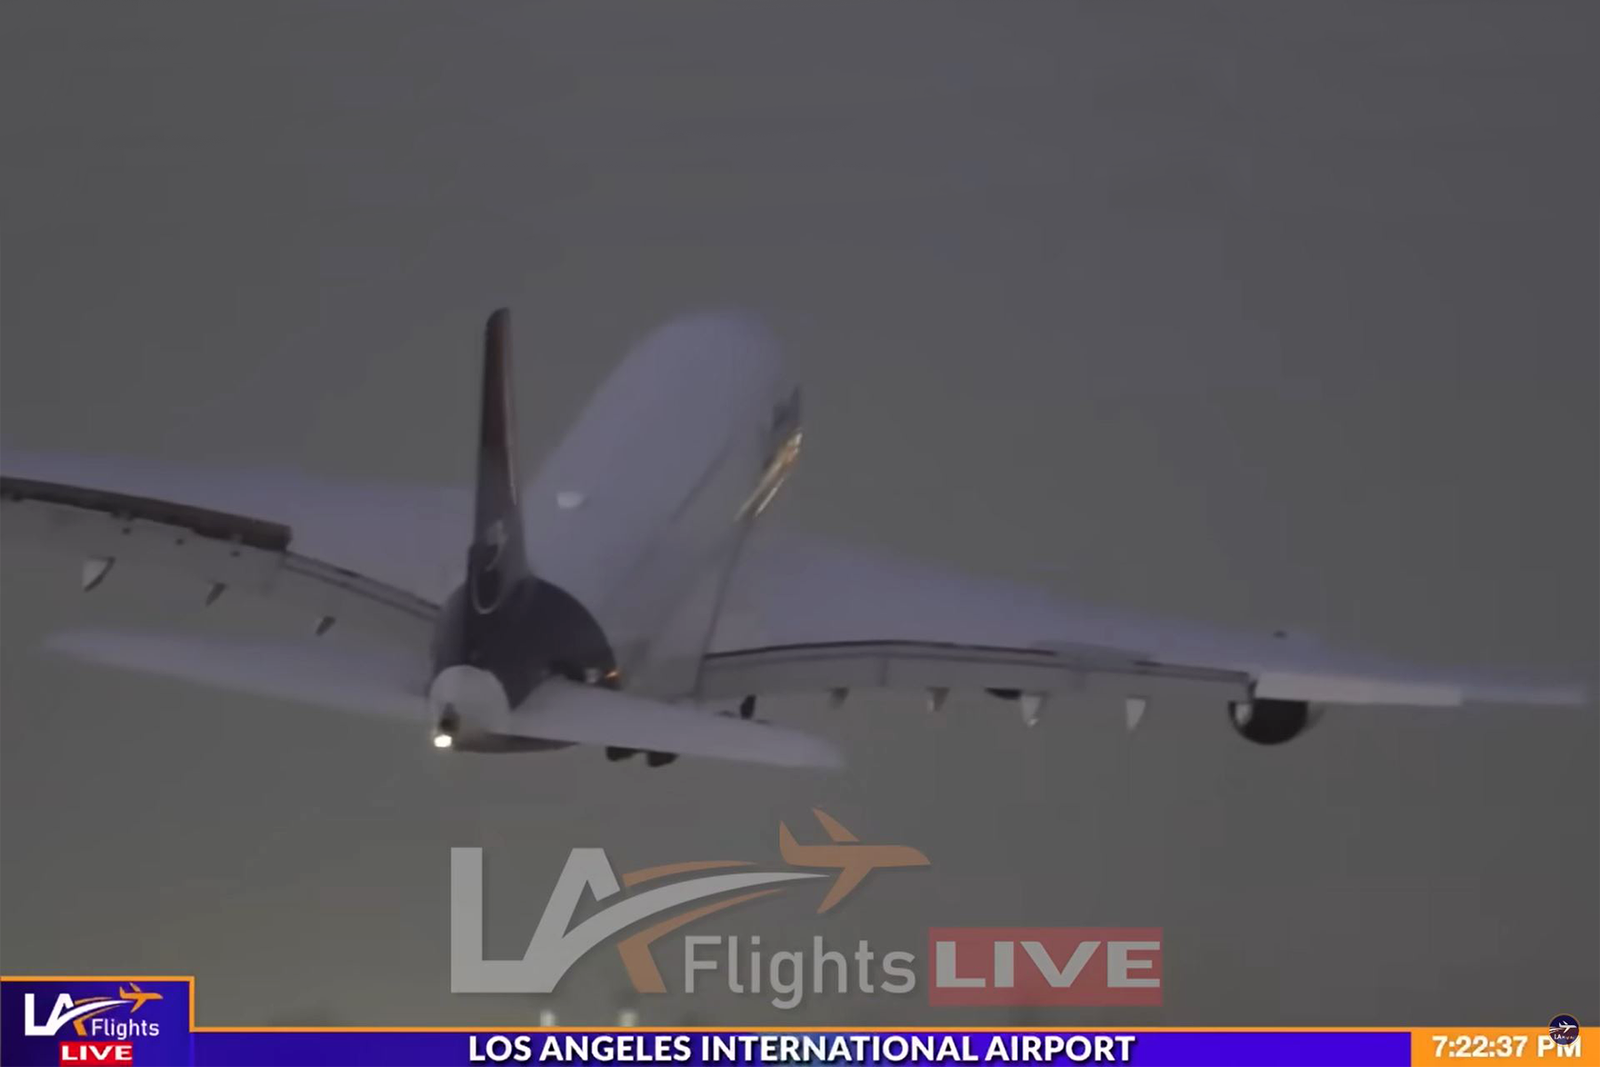 Momento en el que el A380 de Lufthansa atraviesa la estela turbulenta del A380 de Emirates. Fotograma del clip de L.A. Flights